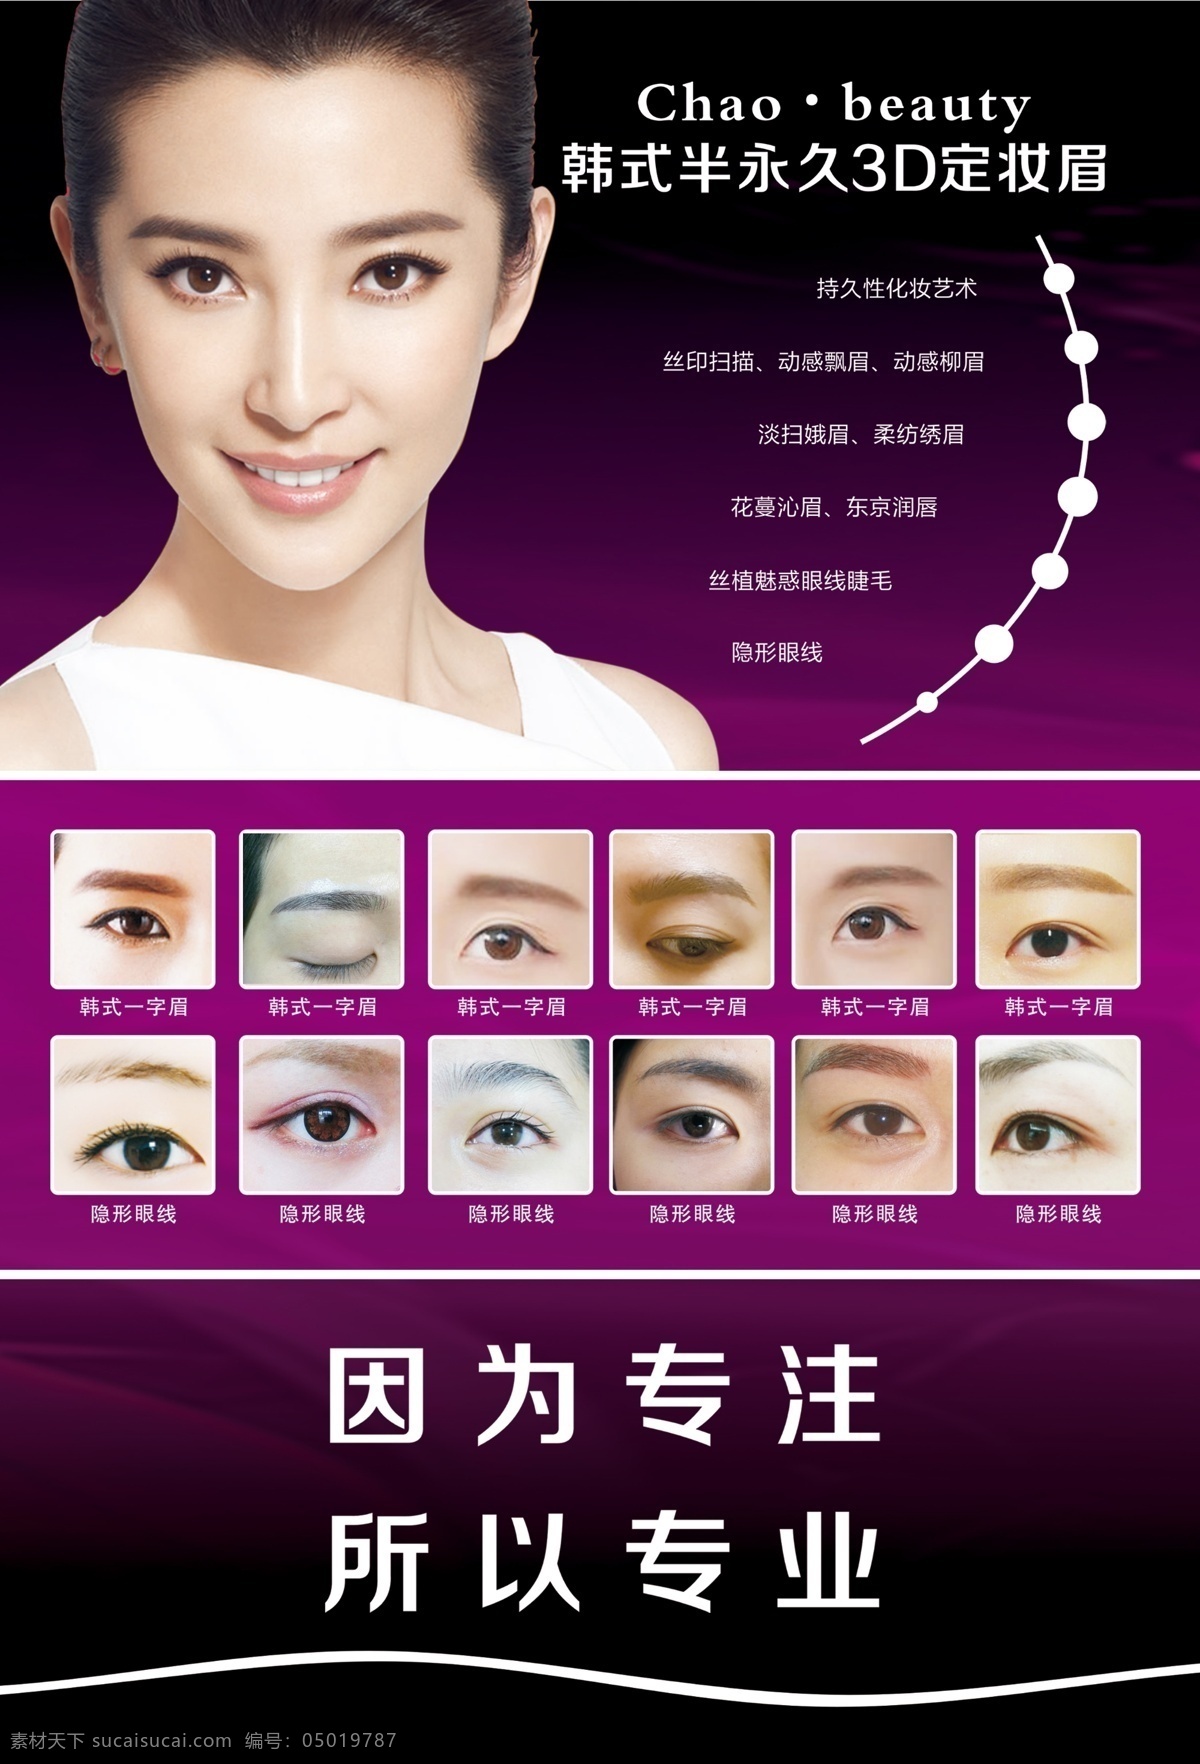 韩式 半 永久 3d 定妆 眉 平面设计企业 宣传画册海报 广告菜单展板 包装封面图片 折页排版制作